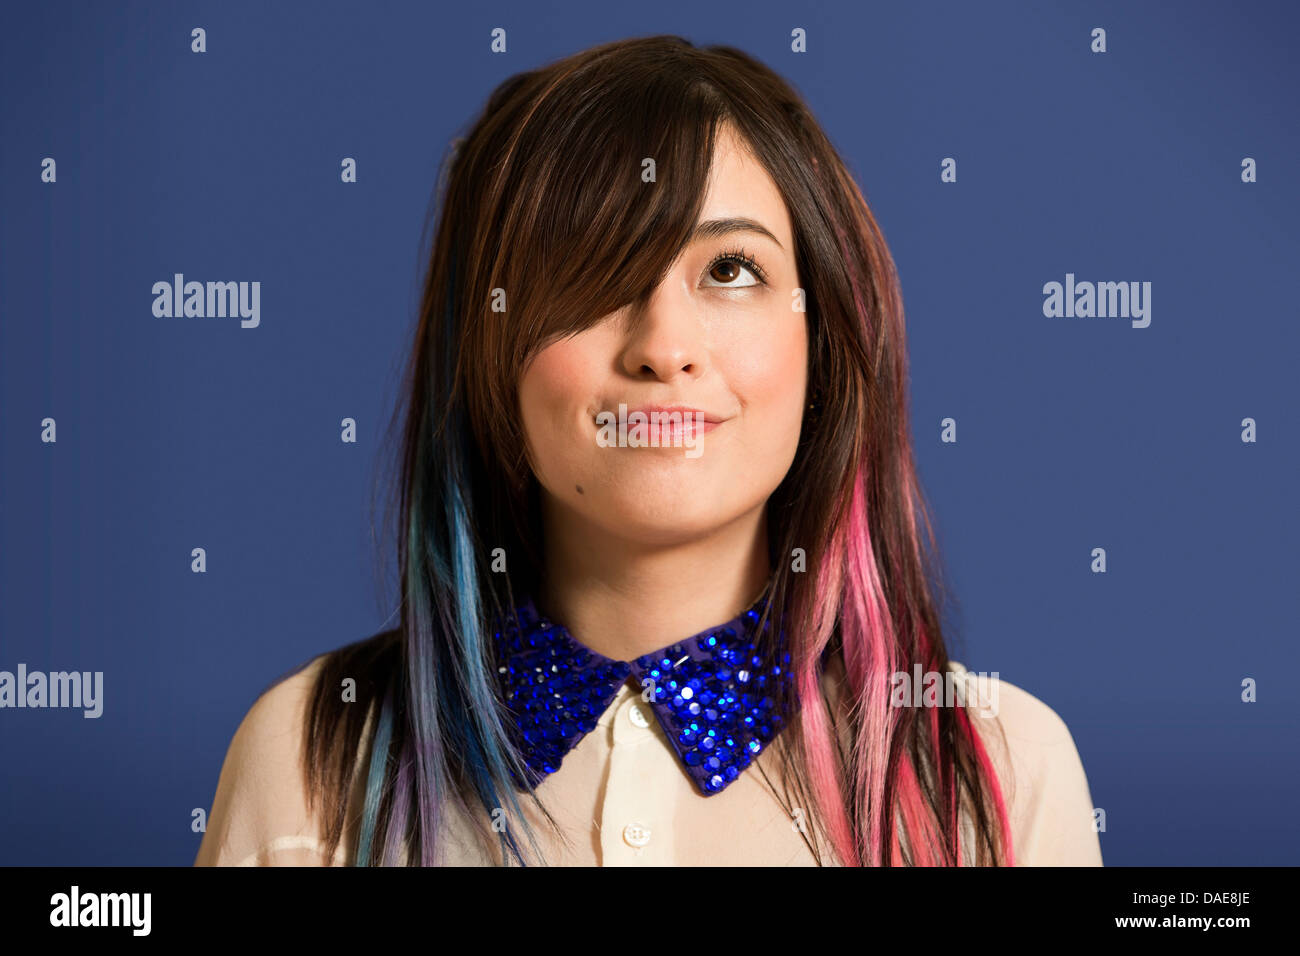 Porträt der jungen Frau mit gefärbten Haaren und blauen Pailletten Kragen Stockfoto